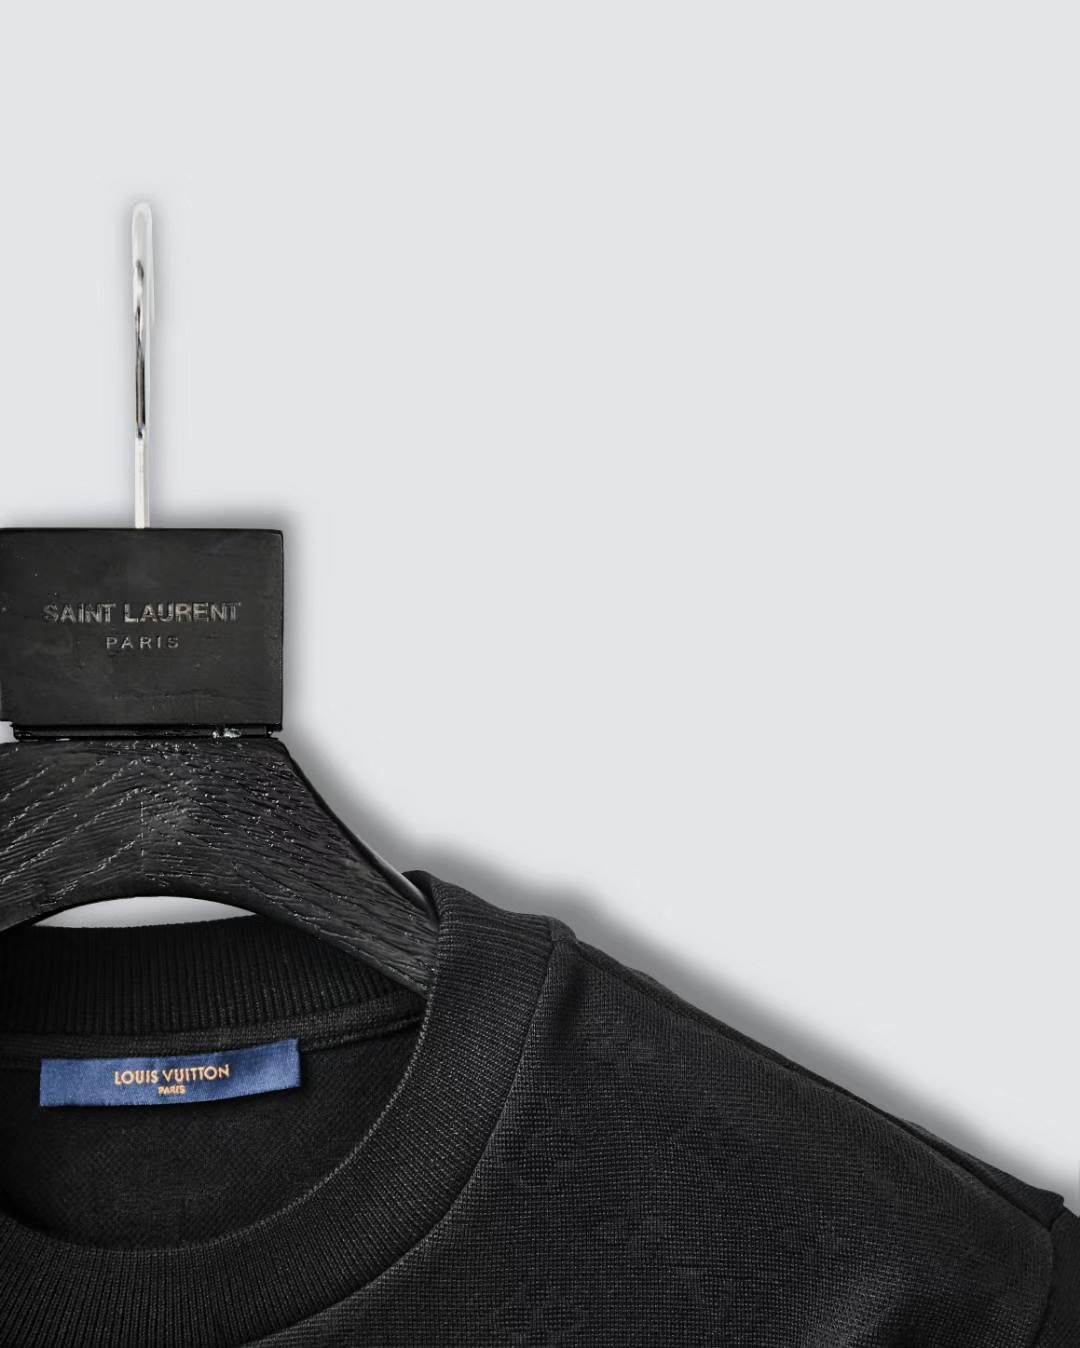 Louis Vuitton 1A5VI2 Signature 3D Pocket Monogram T-Shirt